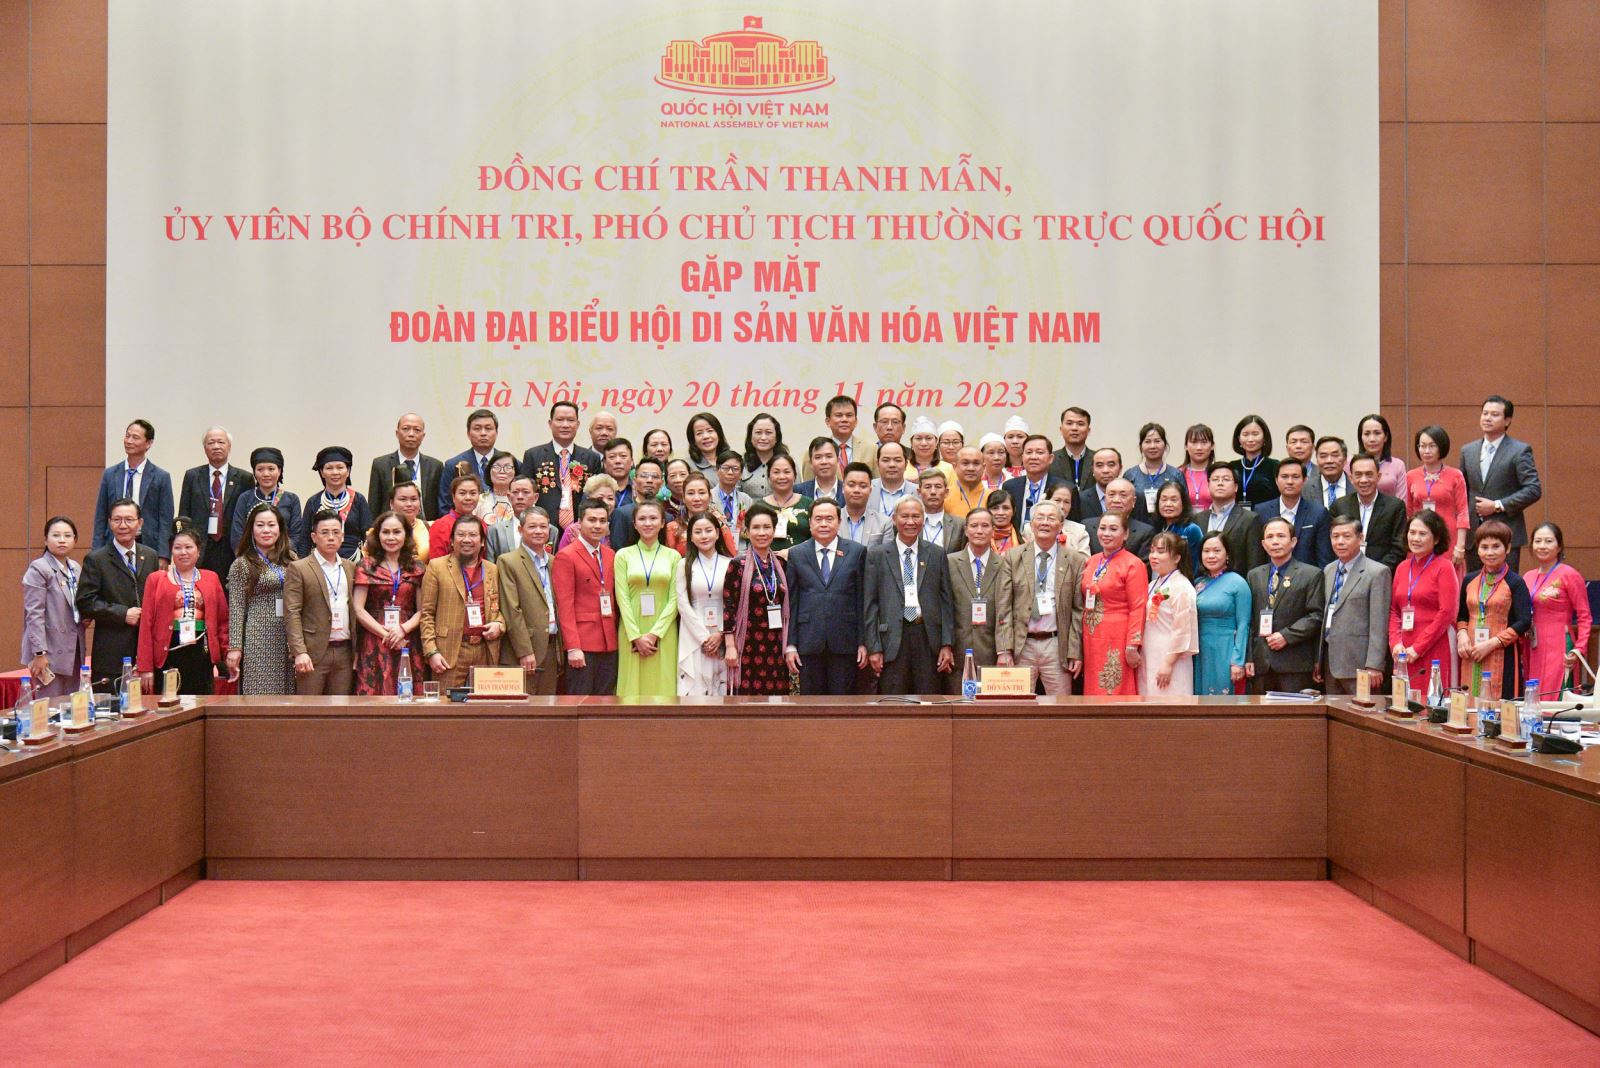 Phó Chủ tịch Thường trực Quốc hội Trần Thanh Mẫn gặp mặt đoàn đại biểu Hội Di sản văn hóa Việt Nam